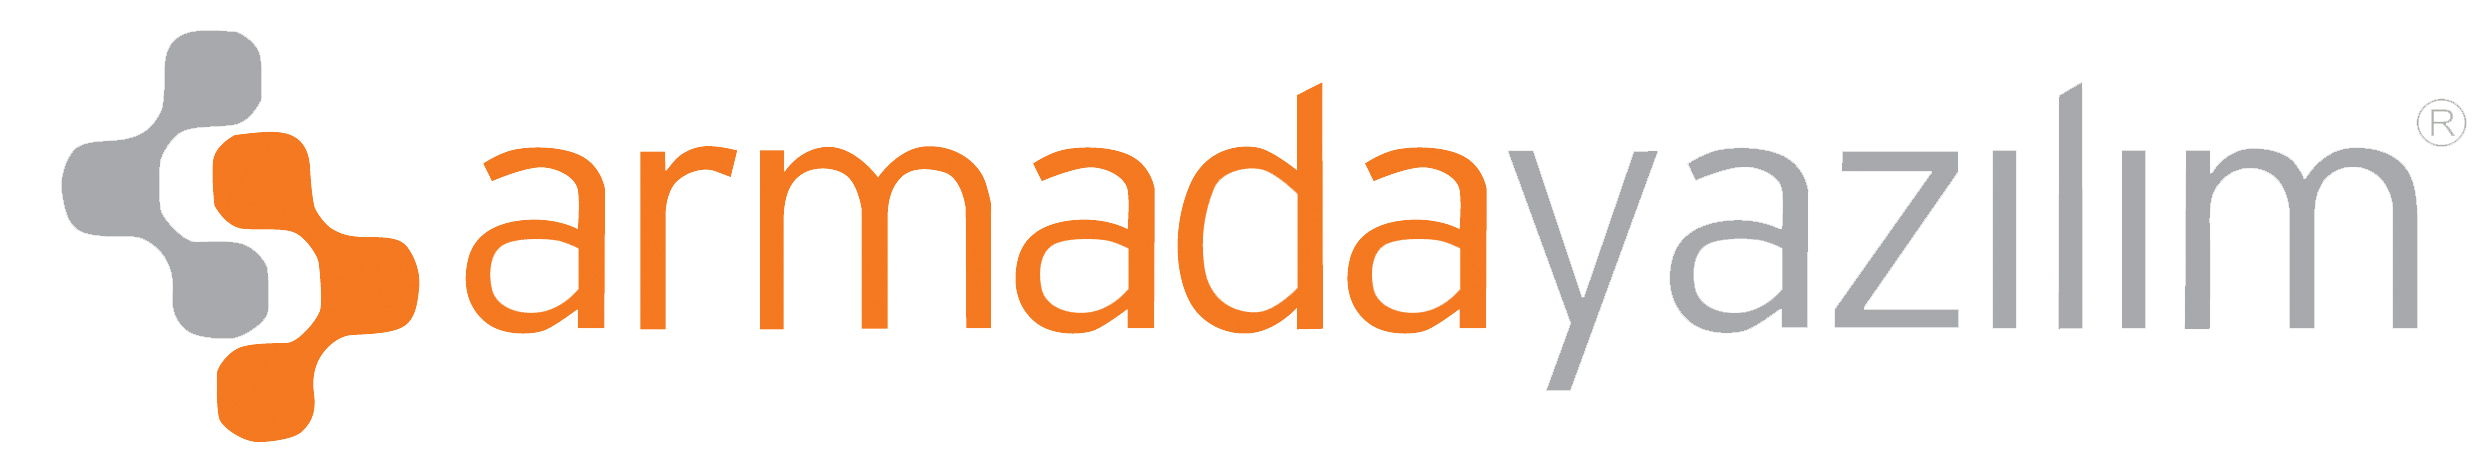 armada yazılım logo